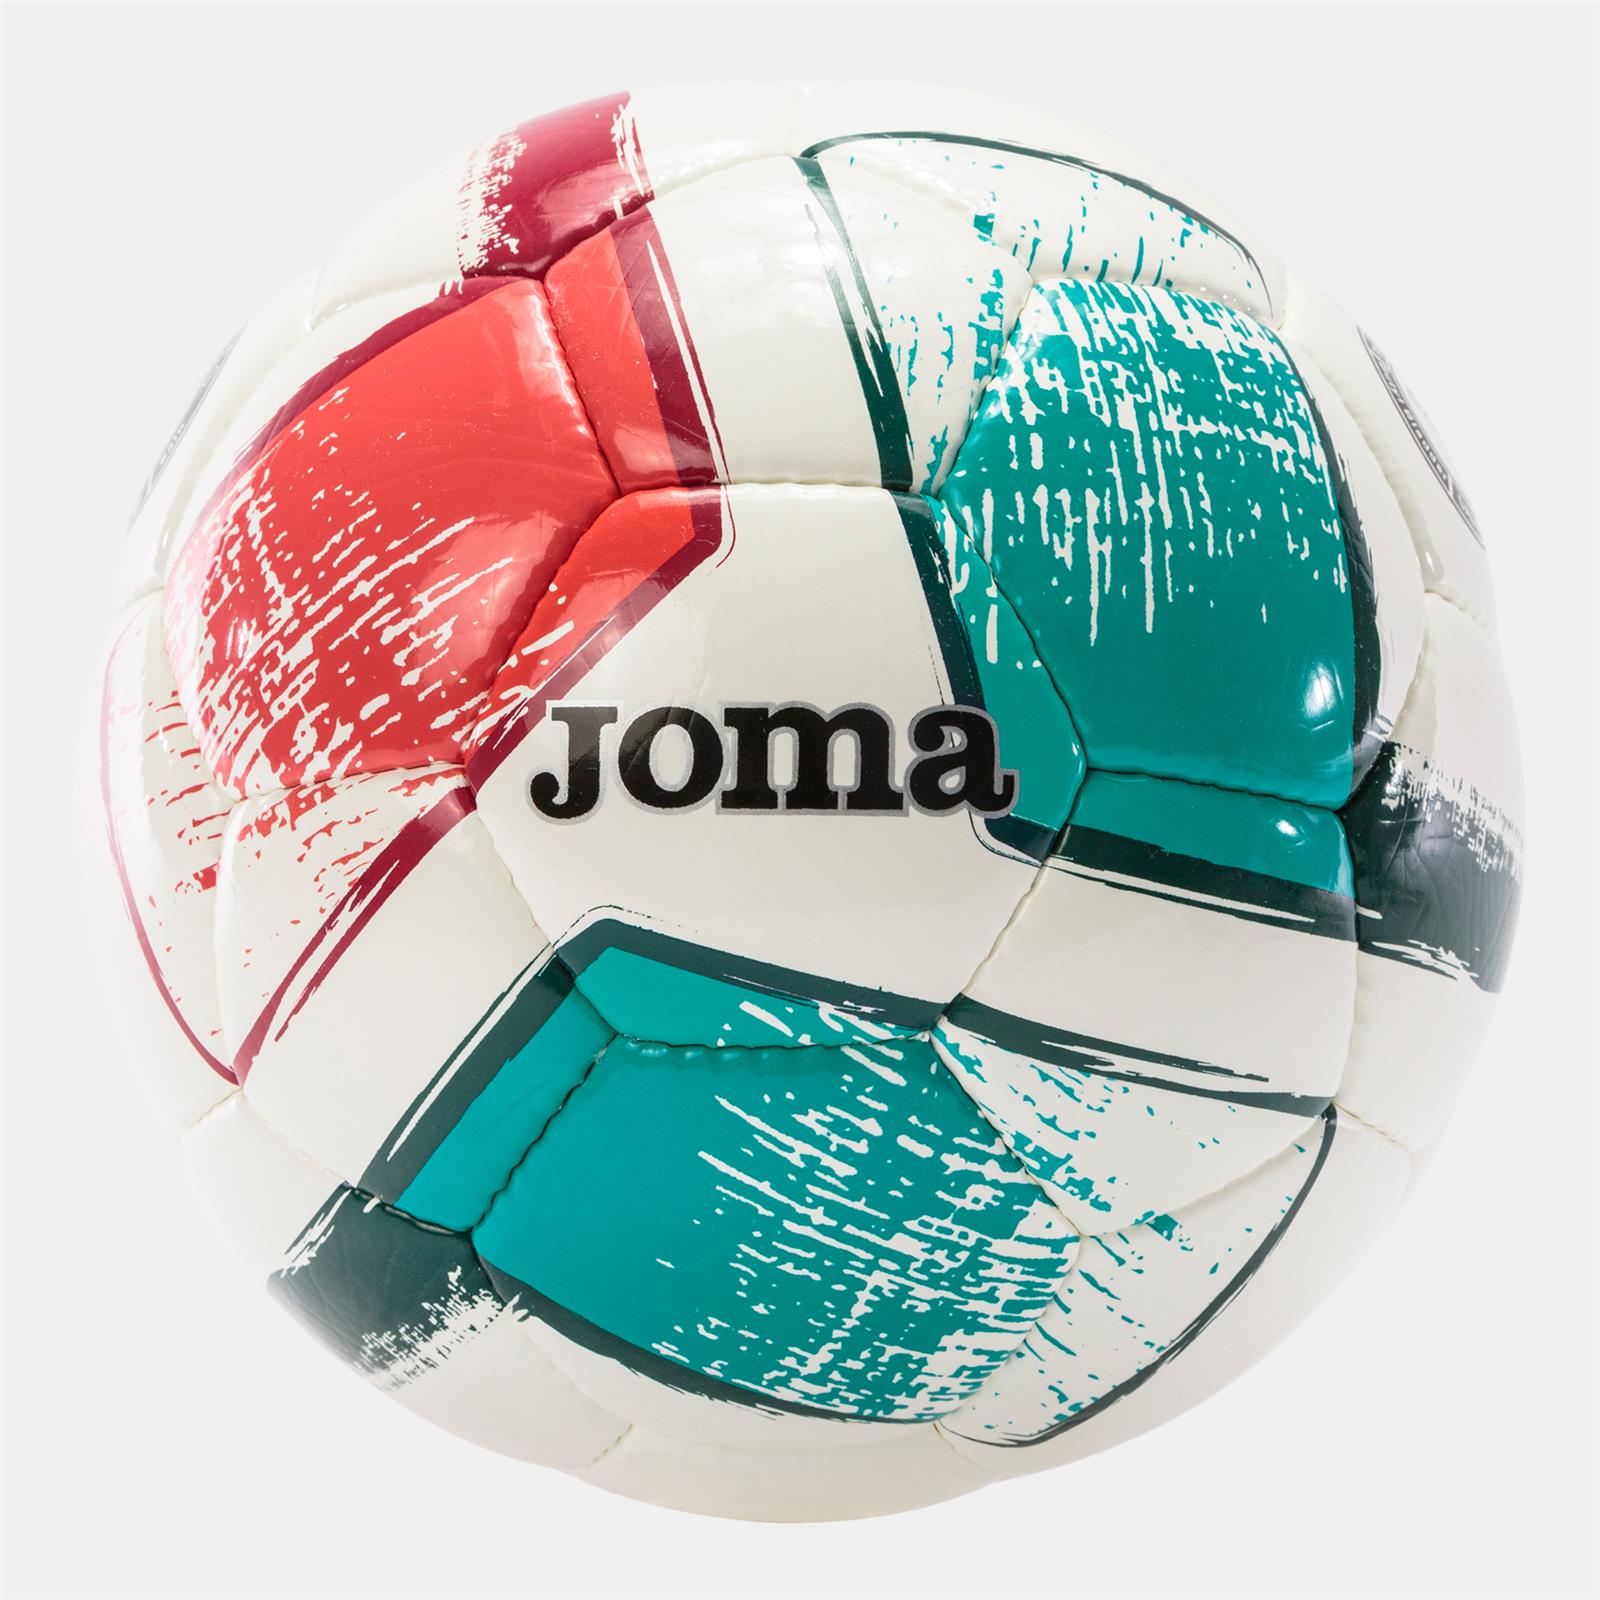 JOMA Nuovo Pallone Dali II Rosso-Verde (Misura 5 - BIANCO - ROSSO - VERDE)